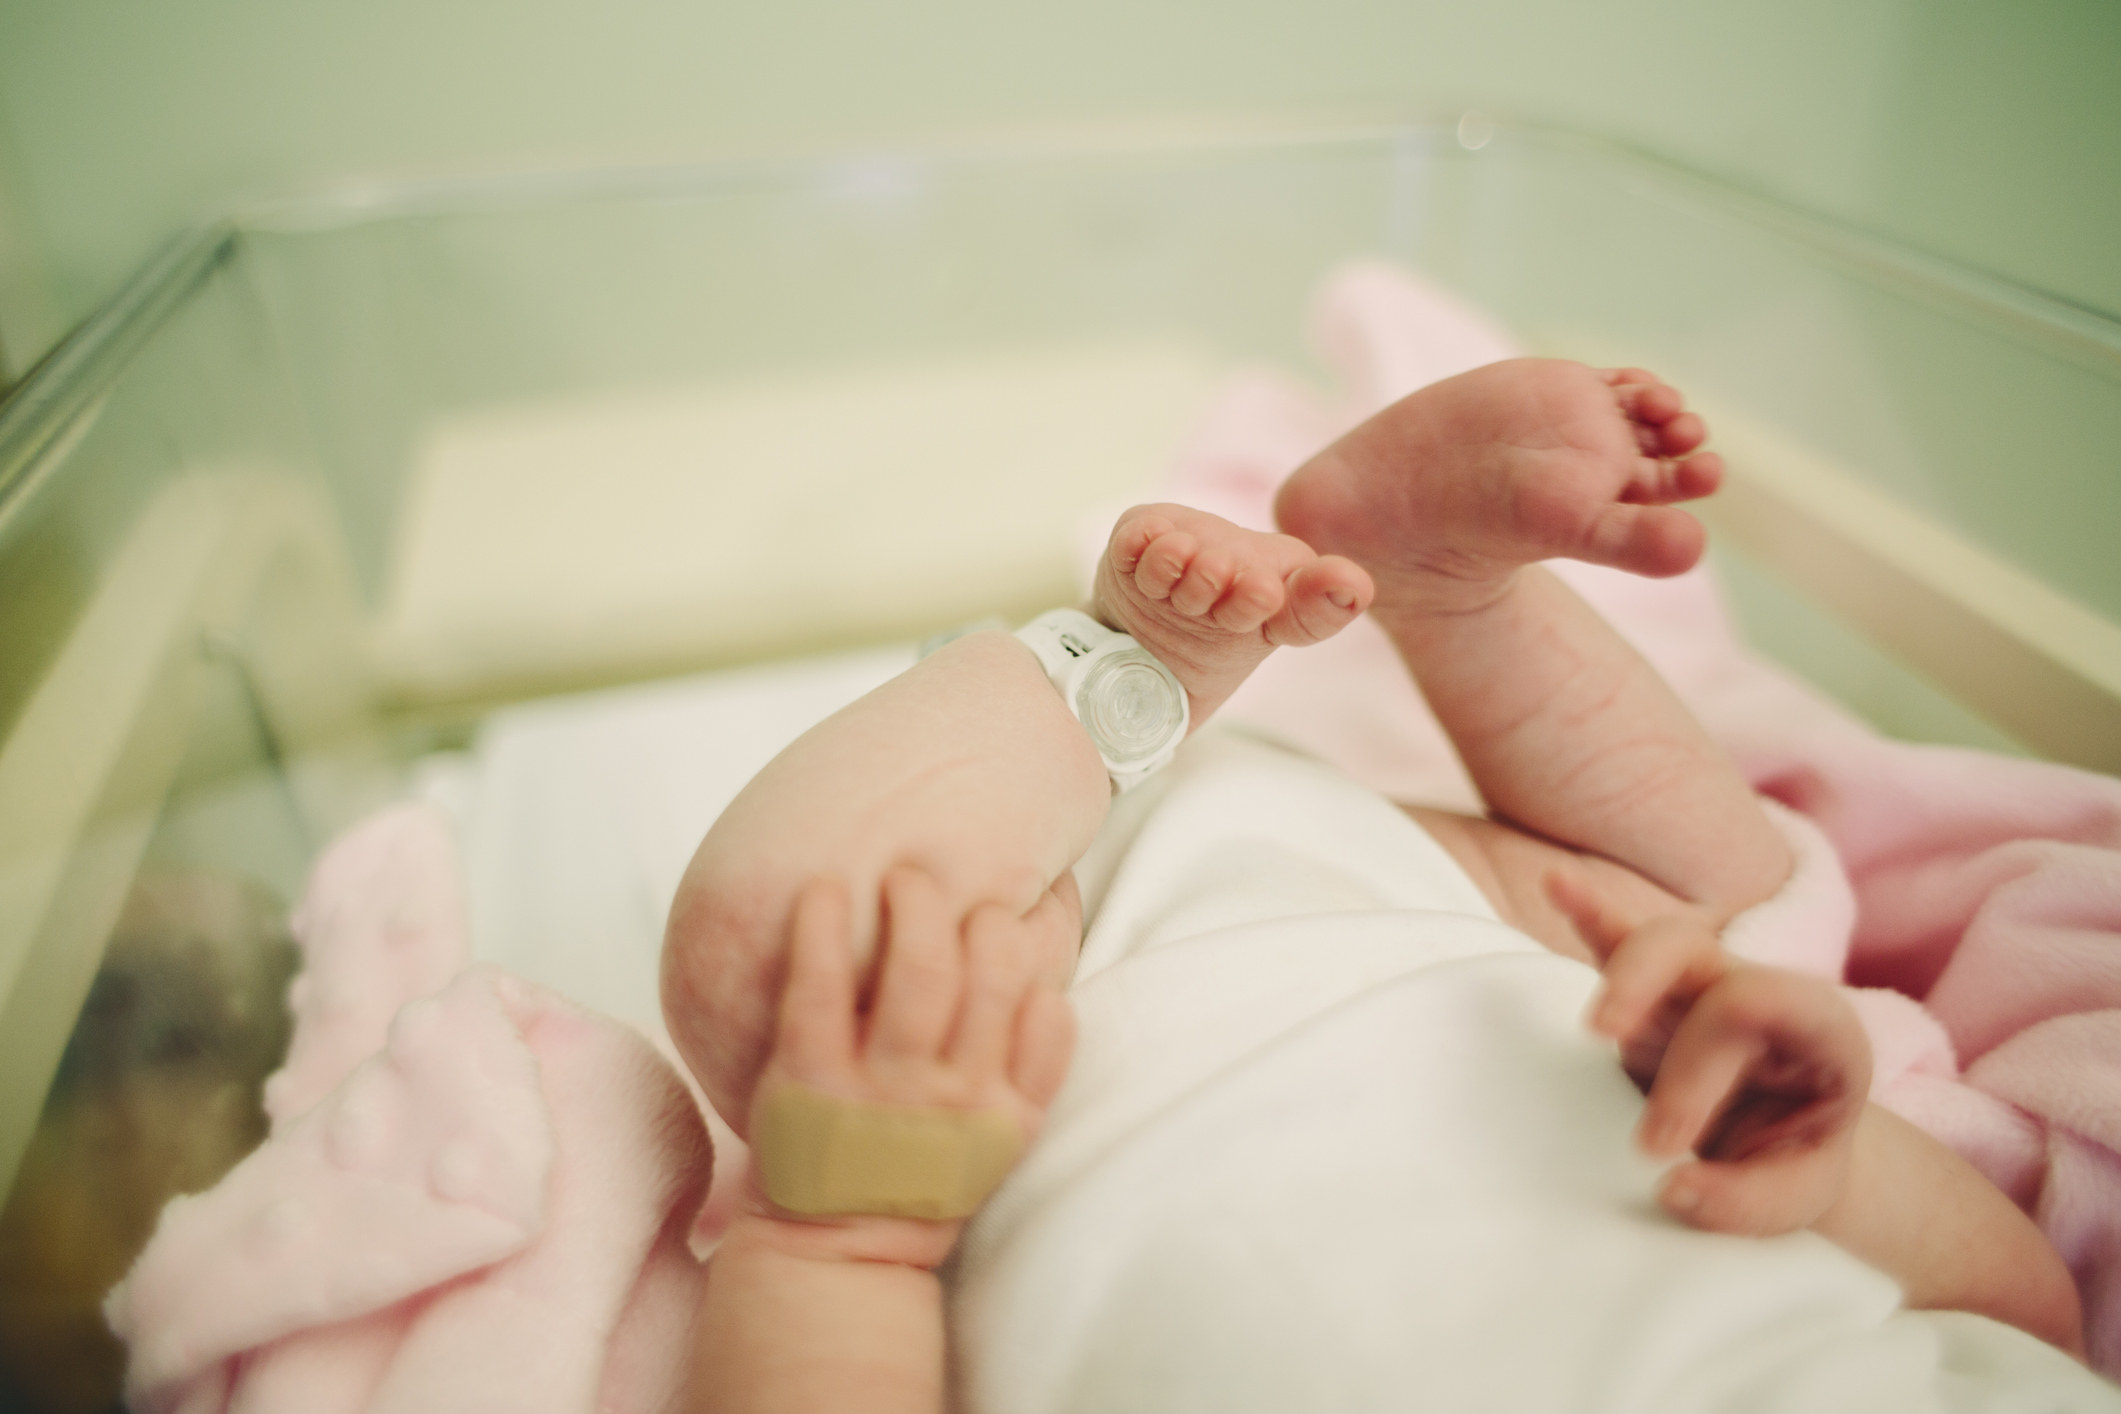 a newborn baby in a hospital crib